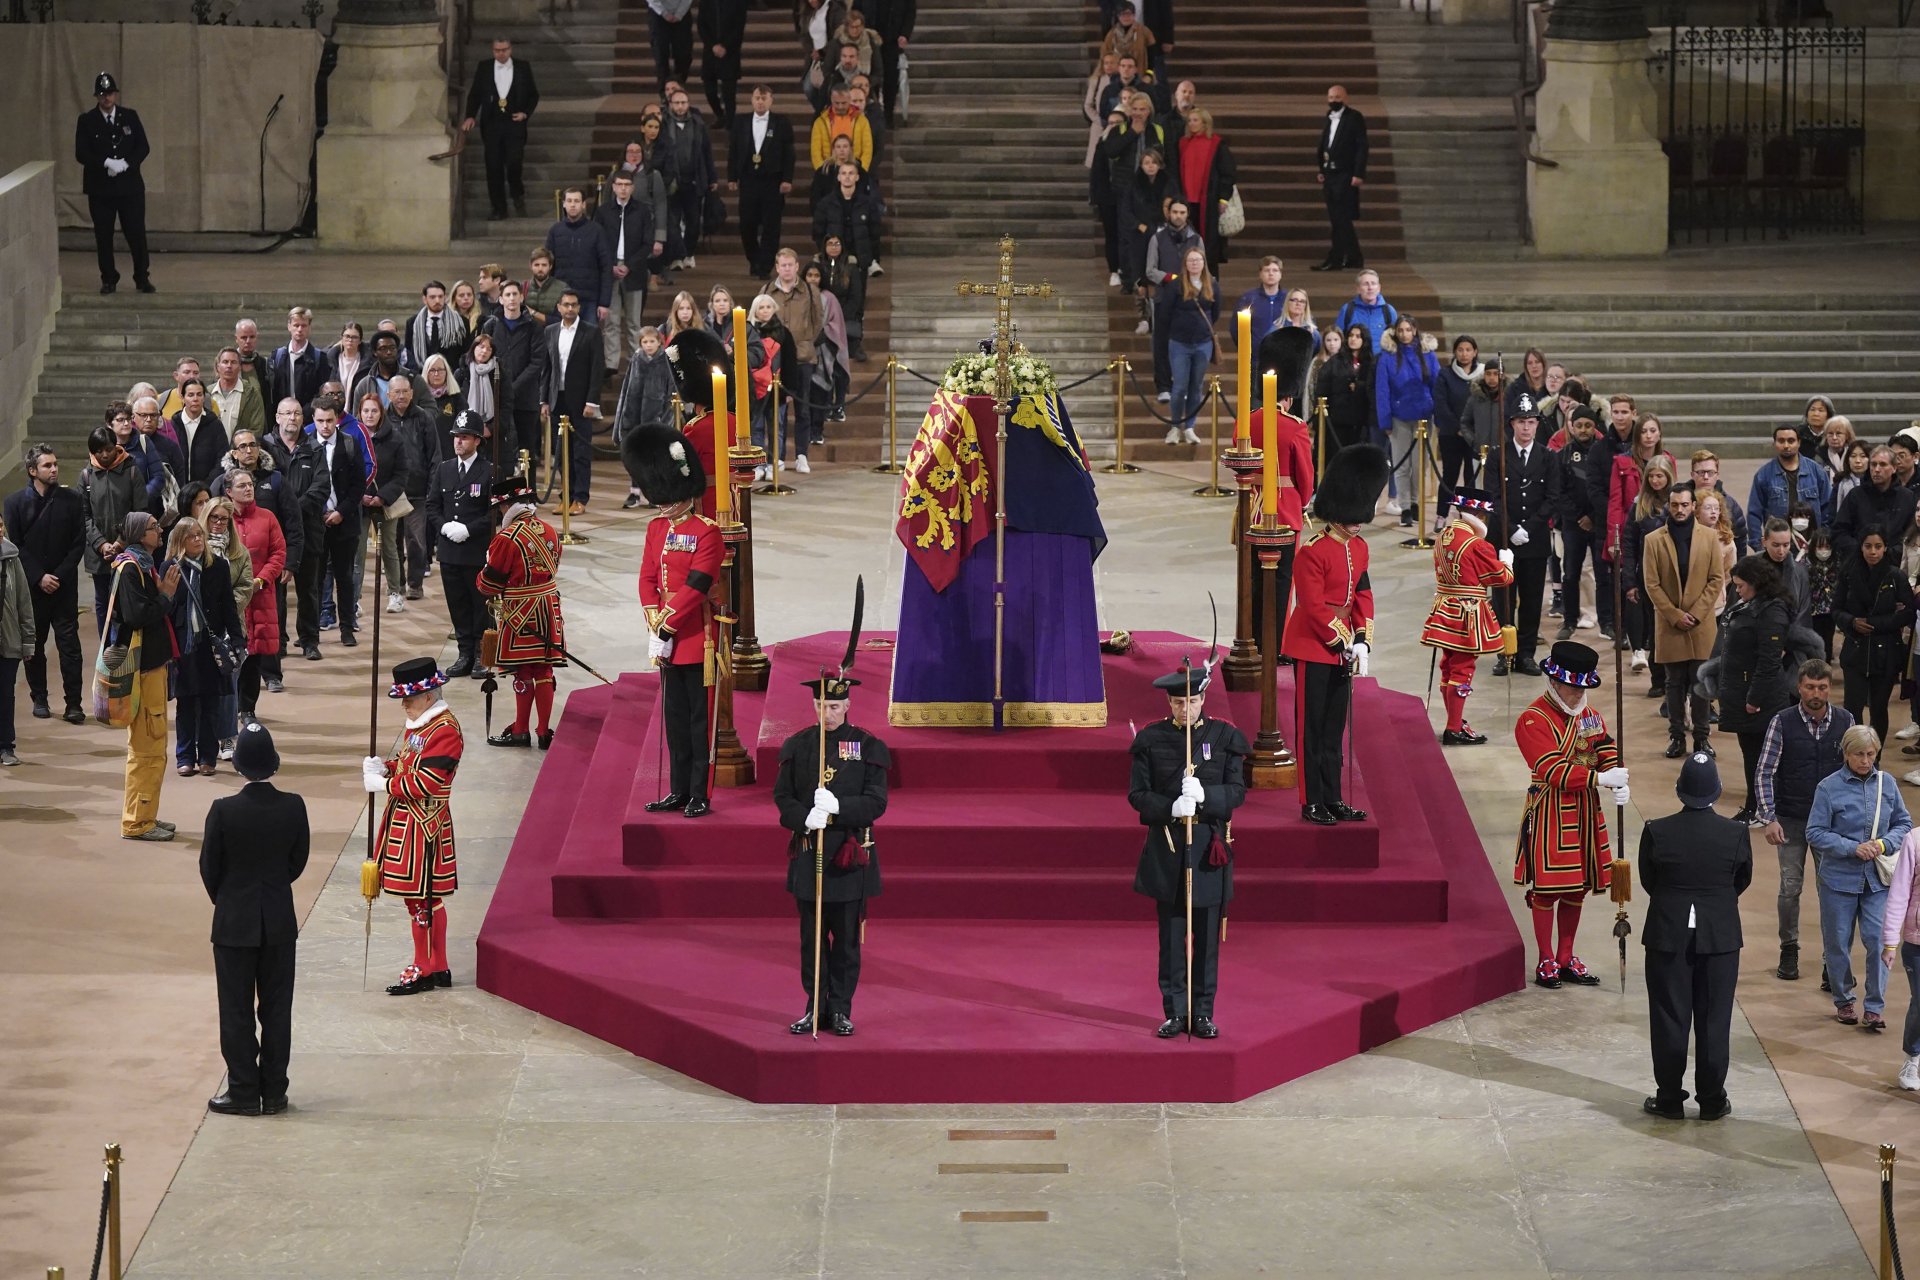 Държавни глави от цял свят се стичат в Лондон, за да се присъединят към членовете на кралското семейство за отдаване на последна почит на Елизабет II.